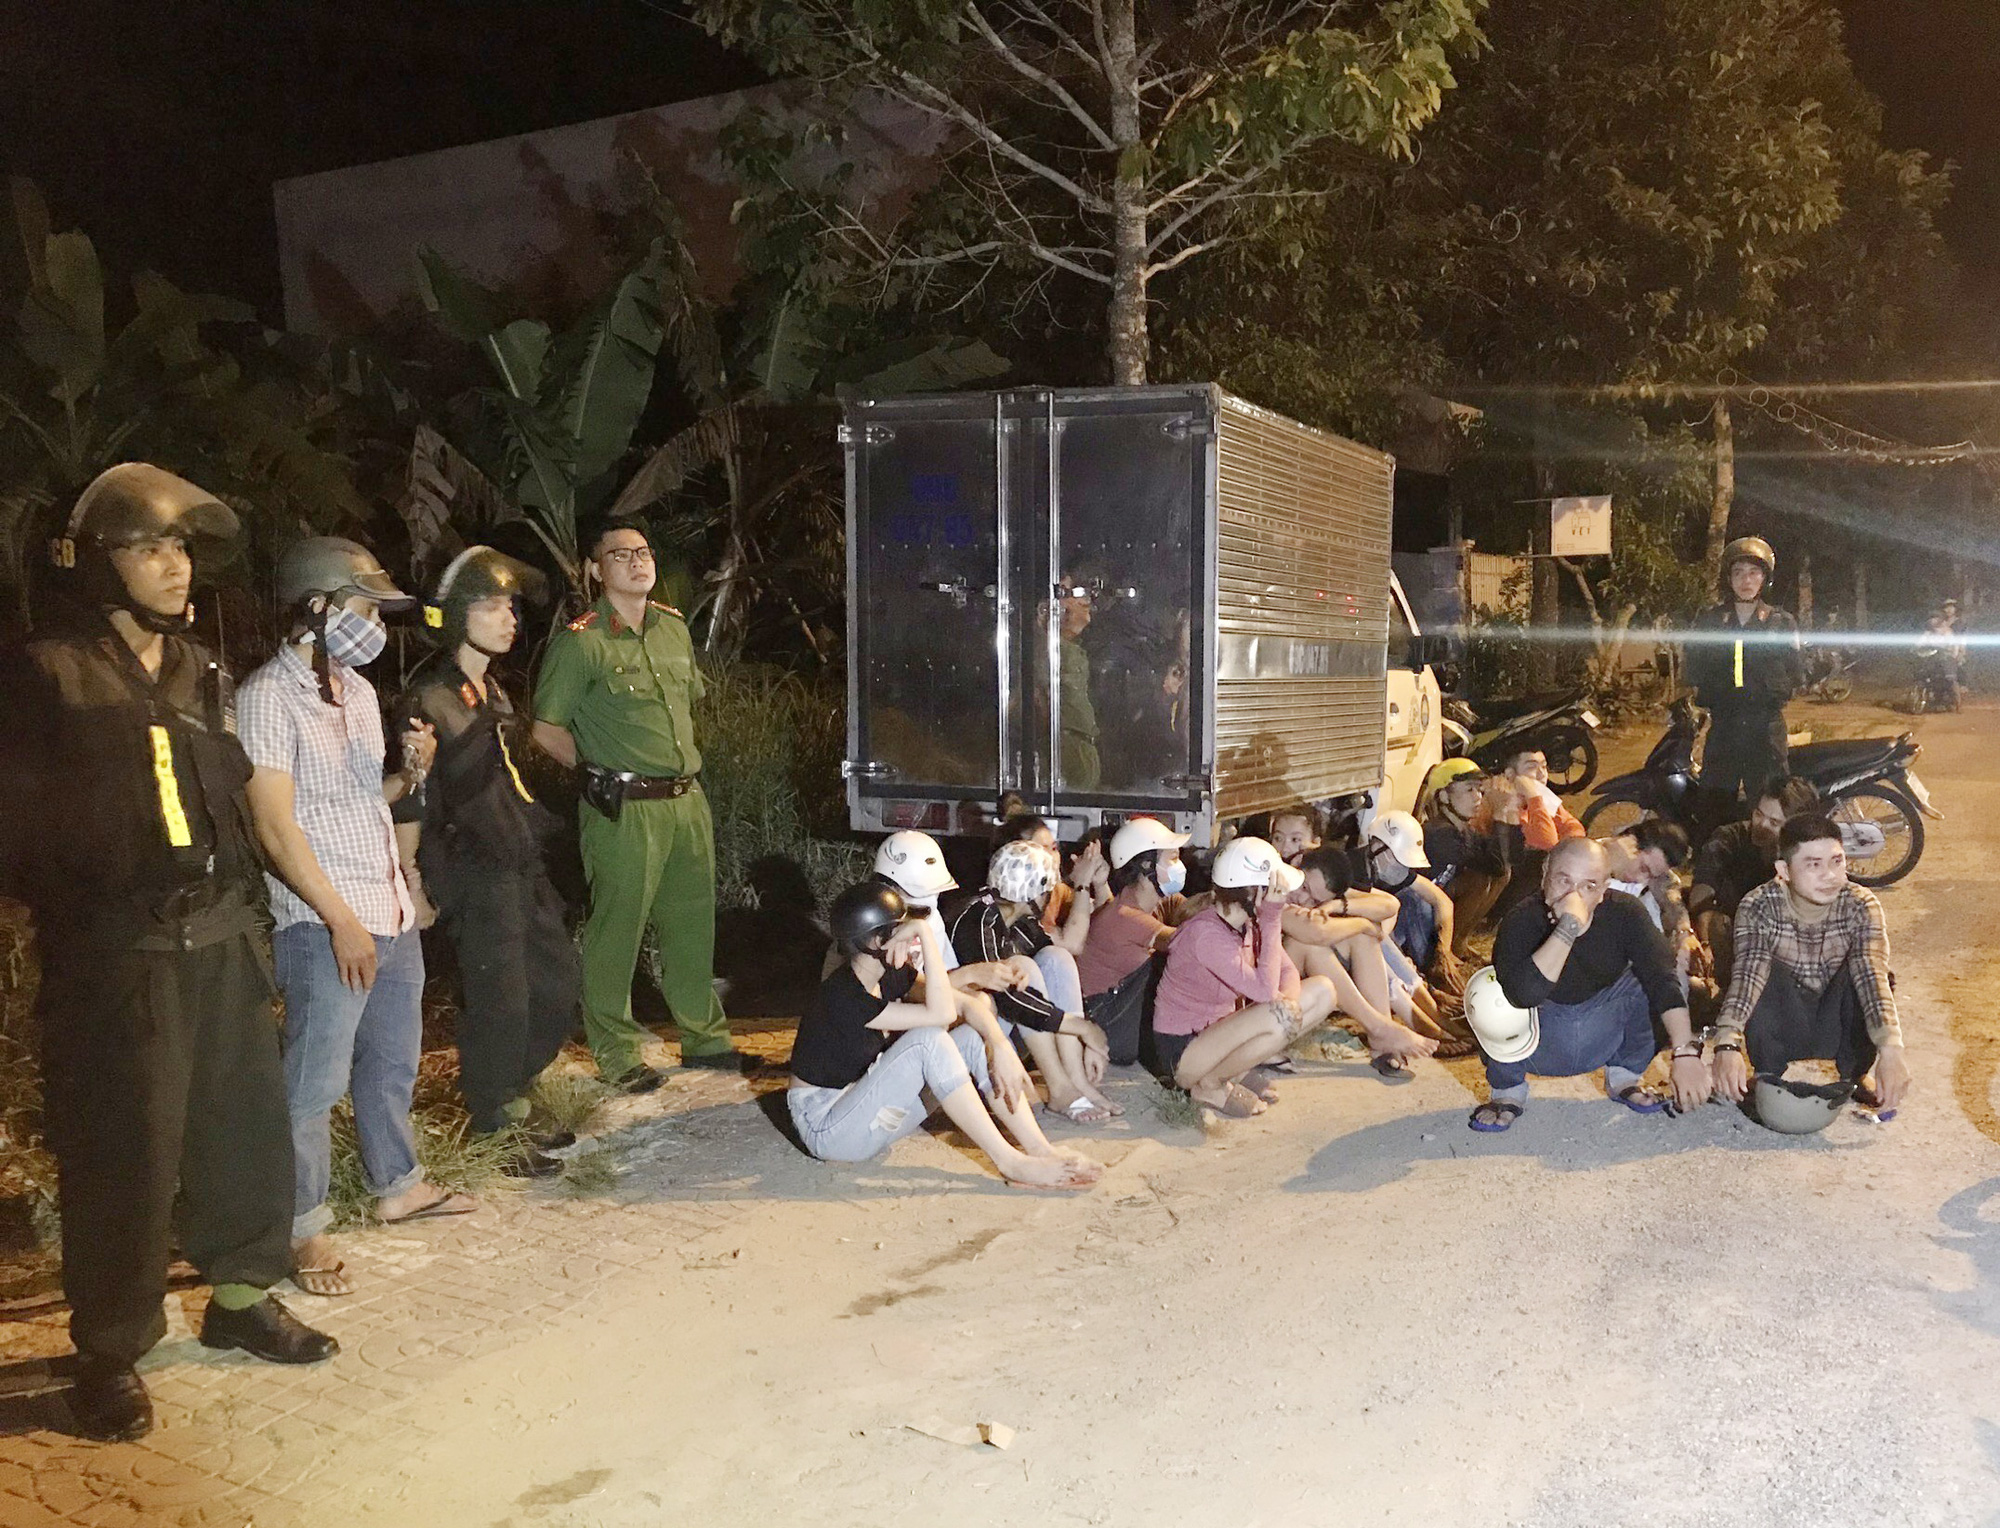 Cảnh sát bắt giữ nhiều chân dài cùng nhóm giang hồ mang hung khí đi hỗn chiến - Ảnh 1.